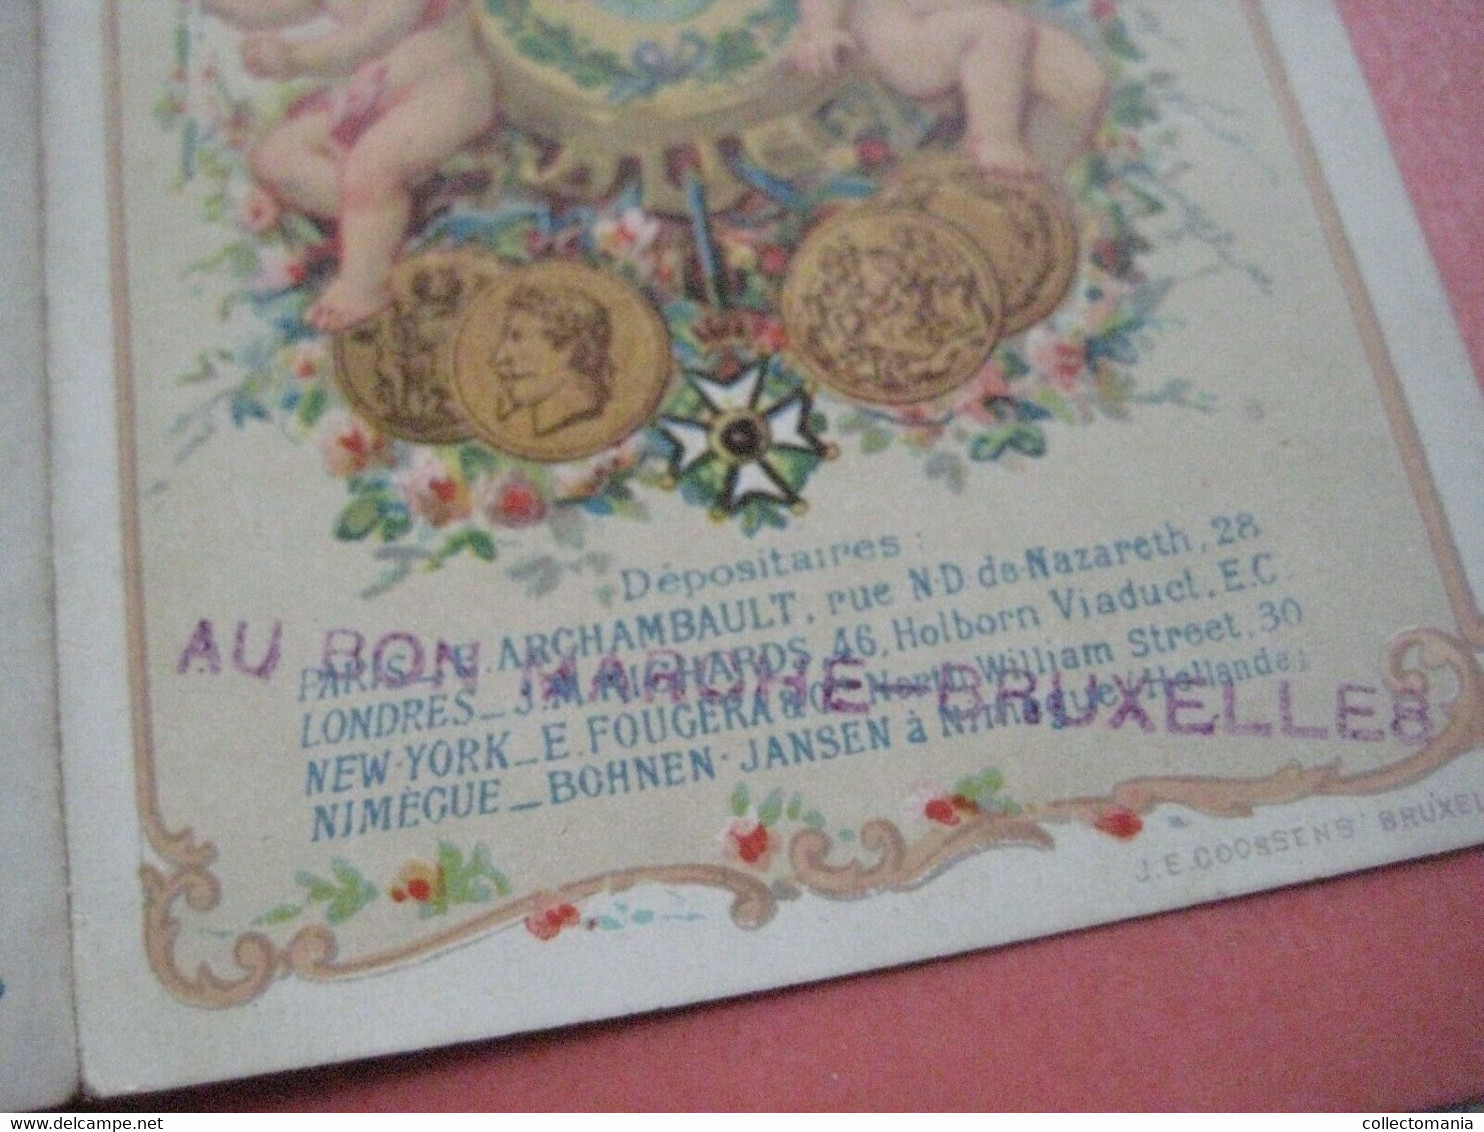 1889 Eeckelaers CHERUB Powder Talcum Baby perfume TRIPLE litho card Excellent parfumerie Savonne Extraits 3-vouwer